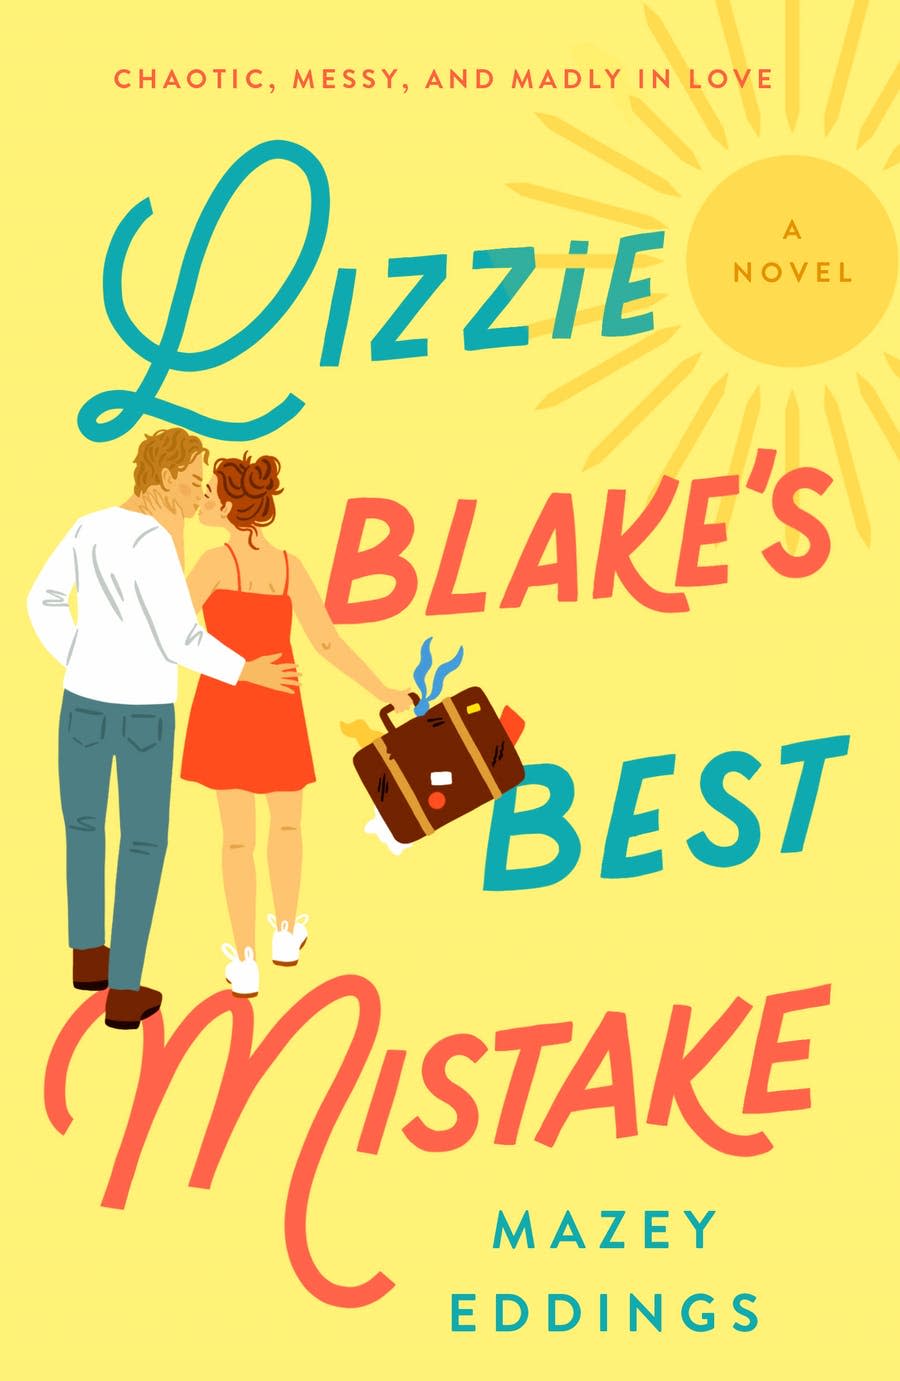 "Lizzie Blake's Best Mistake," by Mazey Eddings